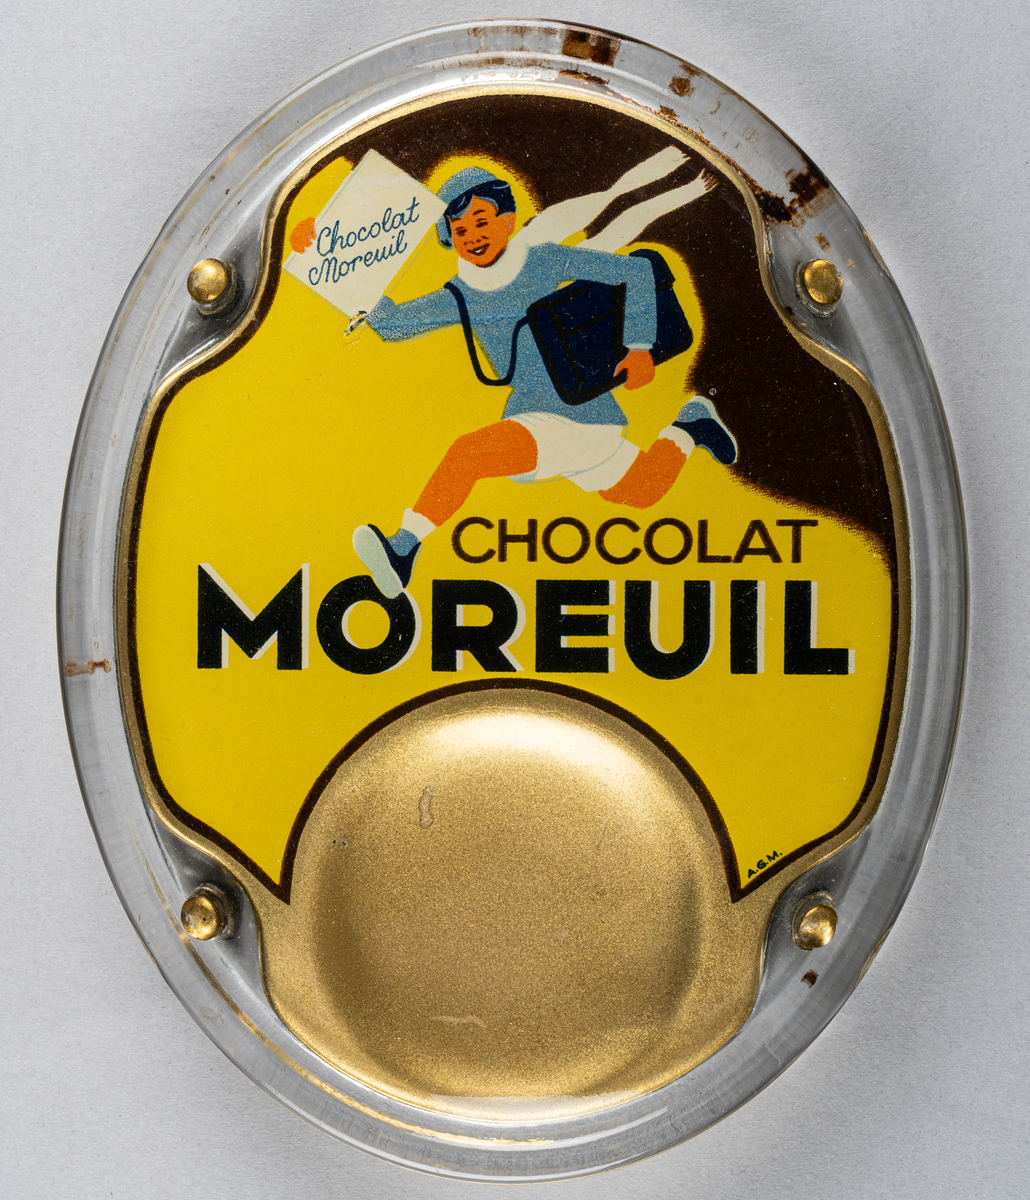 Myntbricka, oval, i glas, med guld, gul och svart bakgrund och springande pojke samt texten "CHOCOLAT MOREUIL" i svart.